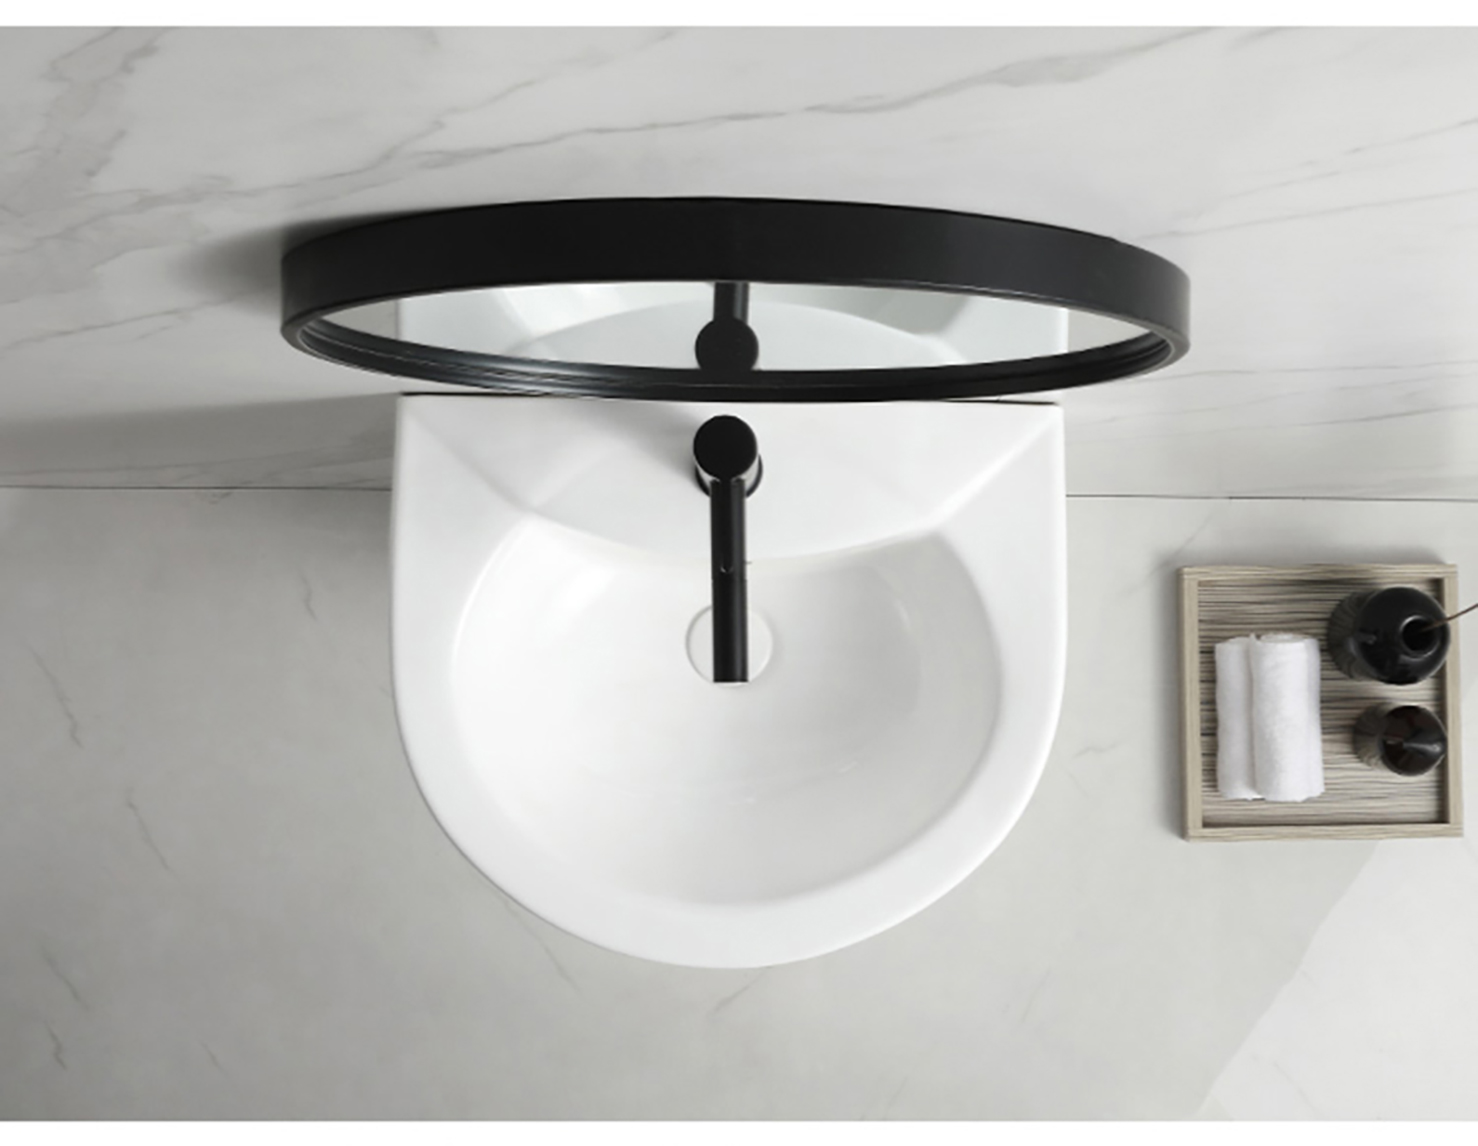 Marble Design Round Pedestal Sink Ceramic Modern Fancy Wash Basin Vasque Hotel Colonne Freestanding Sink (6)